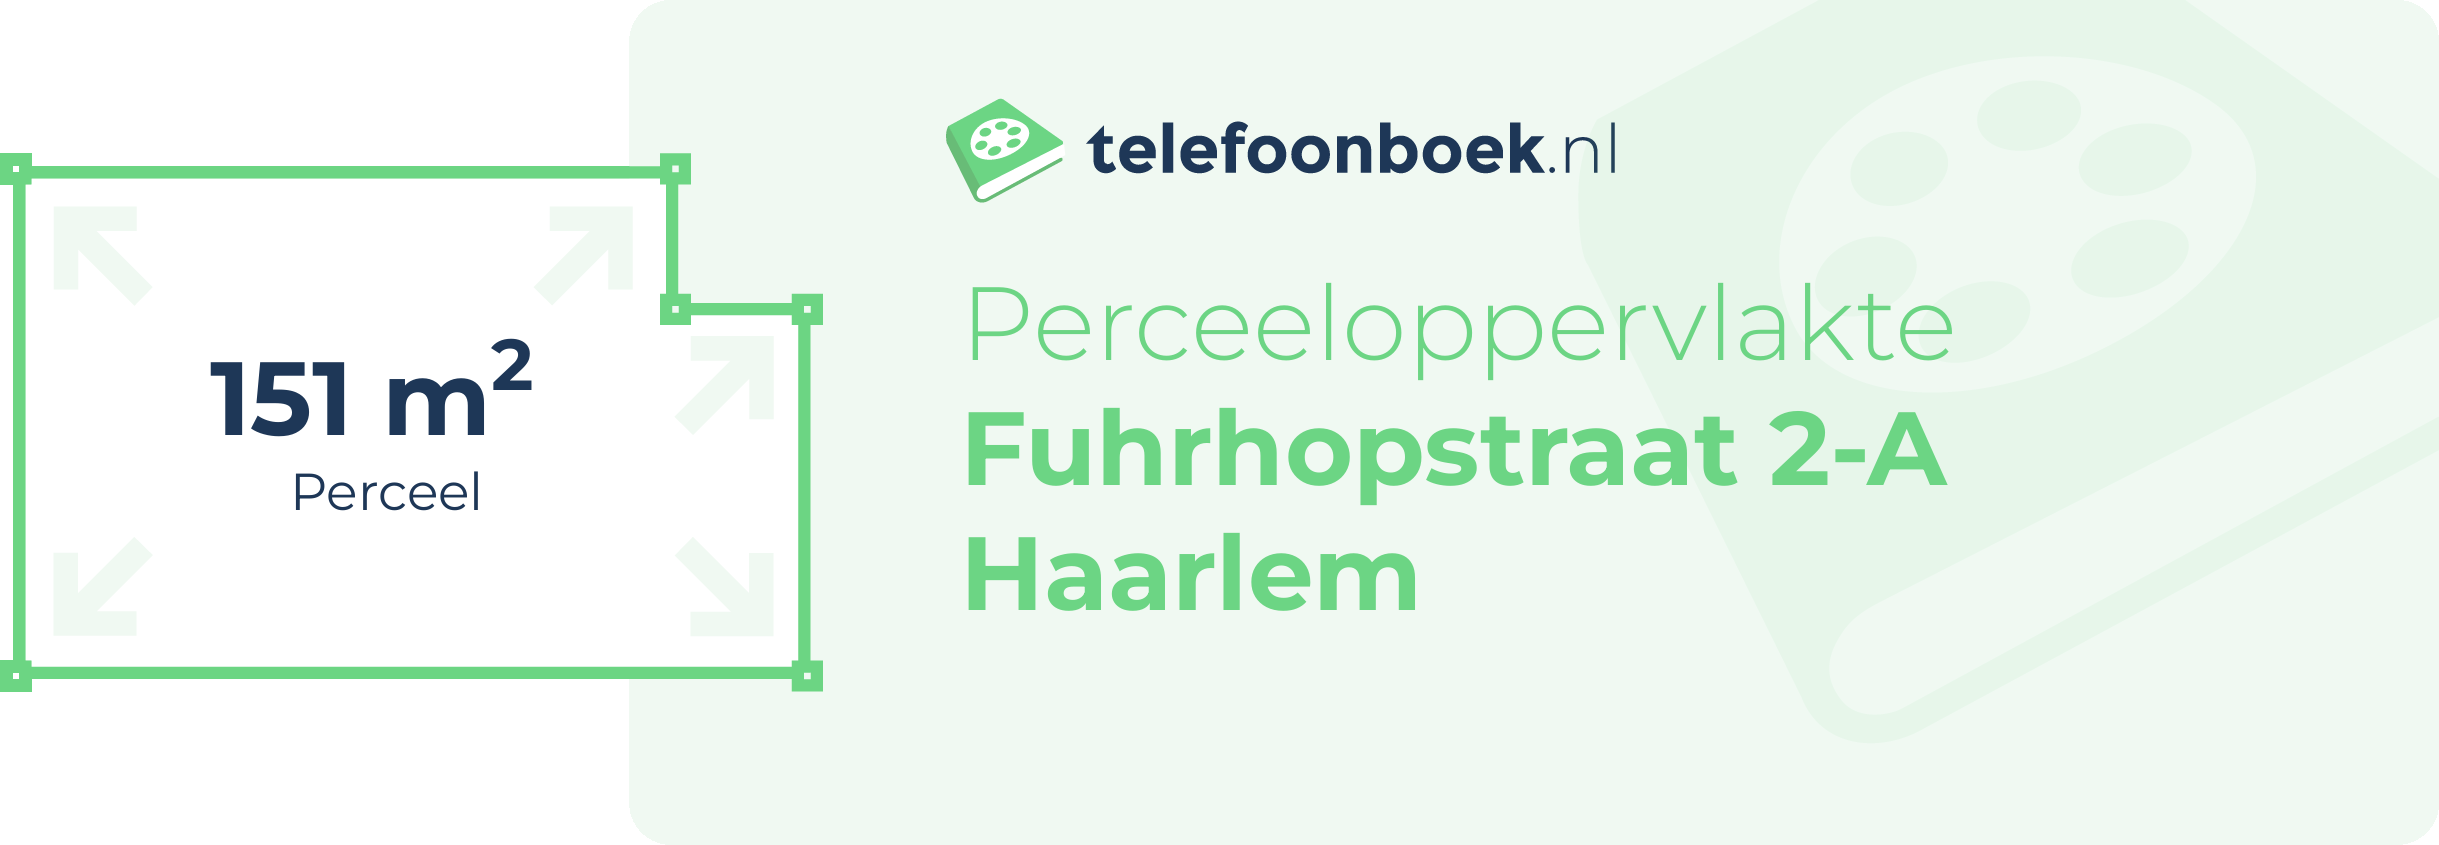 Perceeloppervlakte Fuhrhopstraat 2-A Haarlem